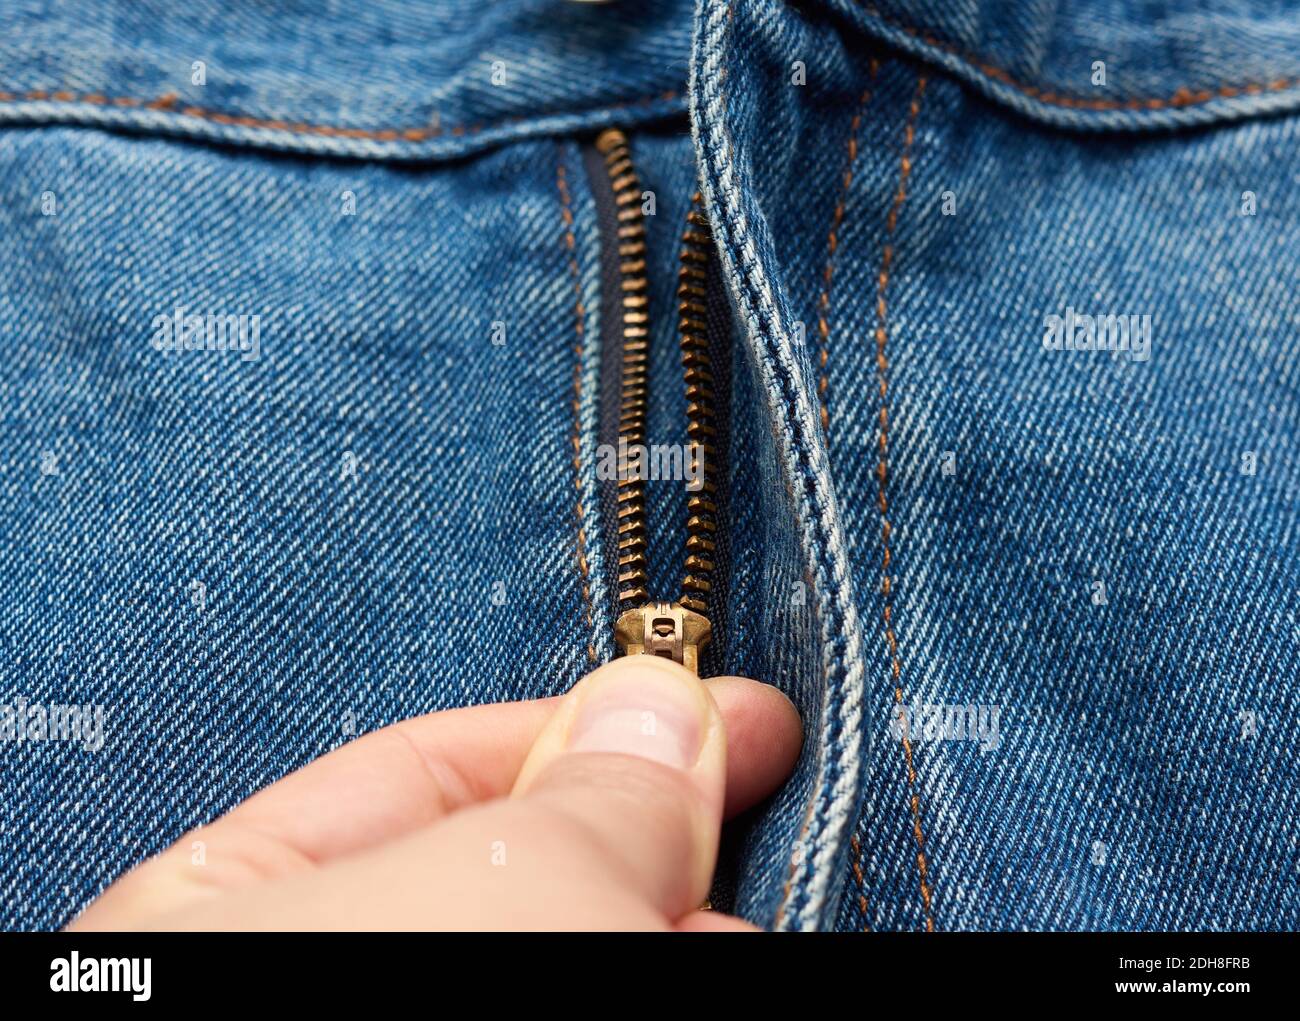 La mano scomprime la chiusura lampo in ferro sulla mosca di blu pantaloni jeans Foto Stock